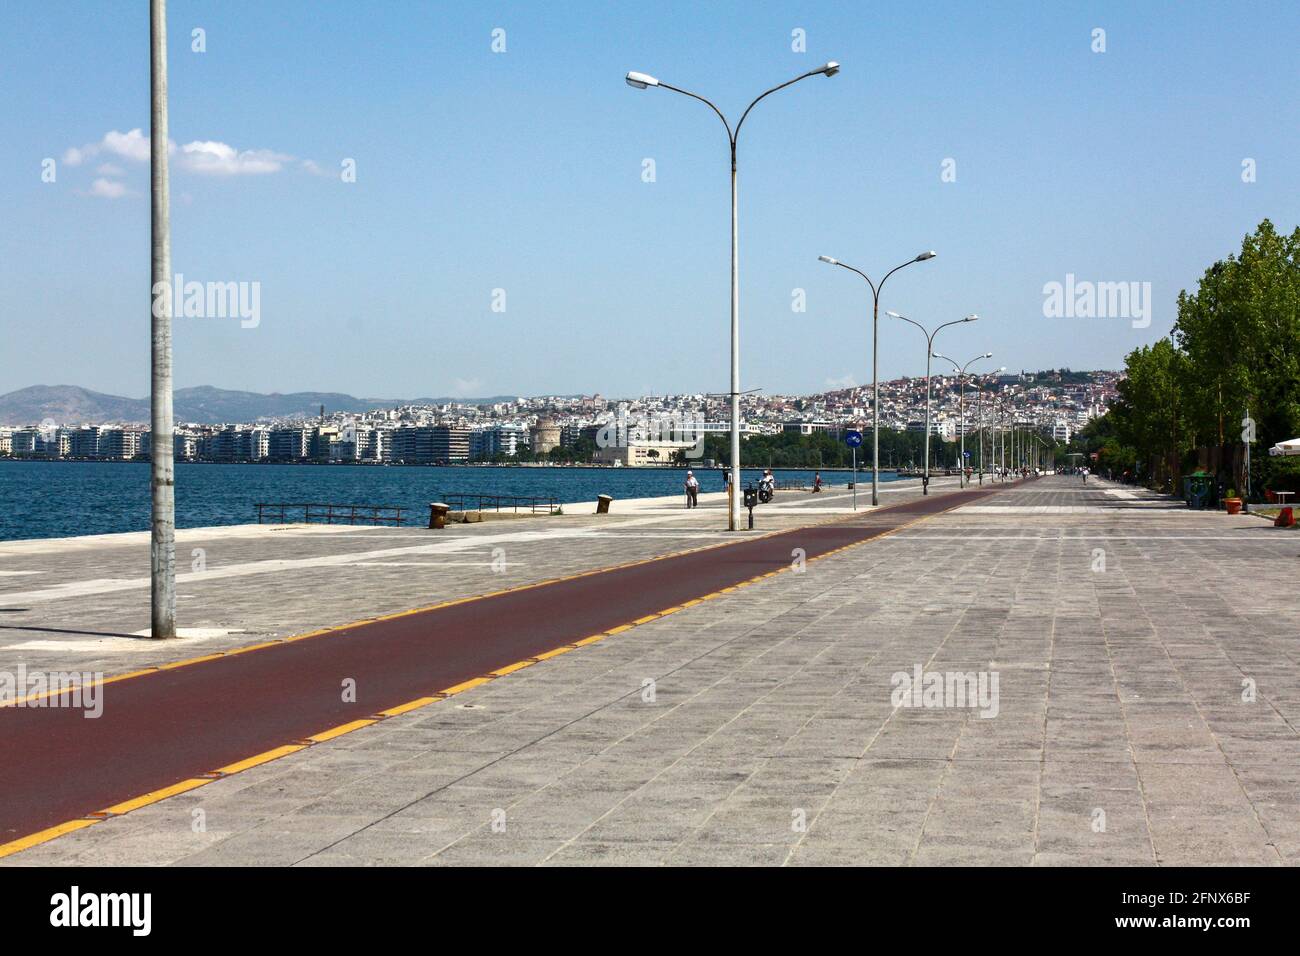 Bord de mer avec piste cyclable à Thessalonique, Grèce. Banque D'Images